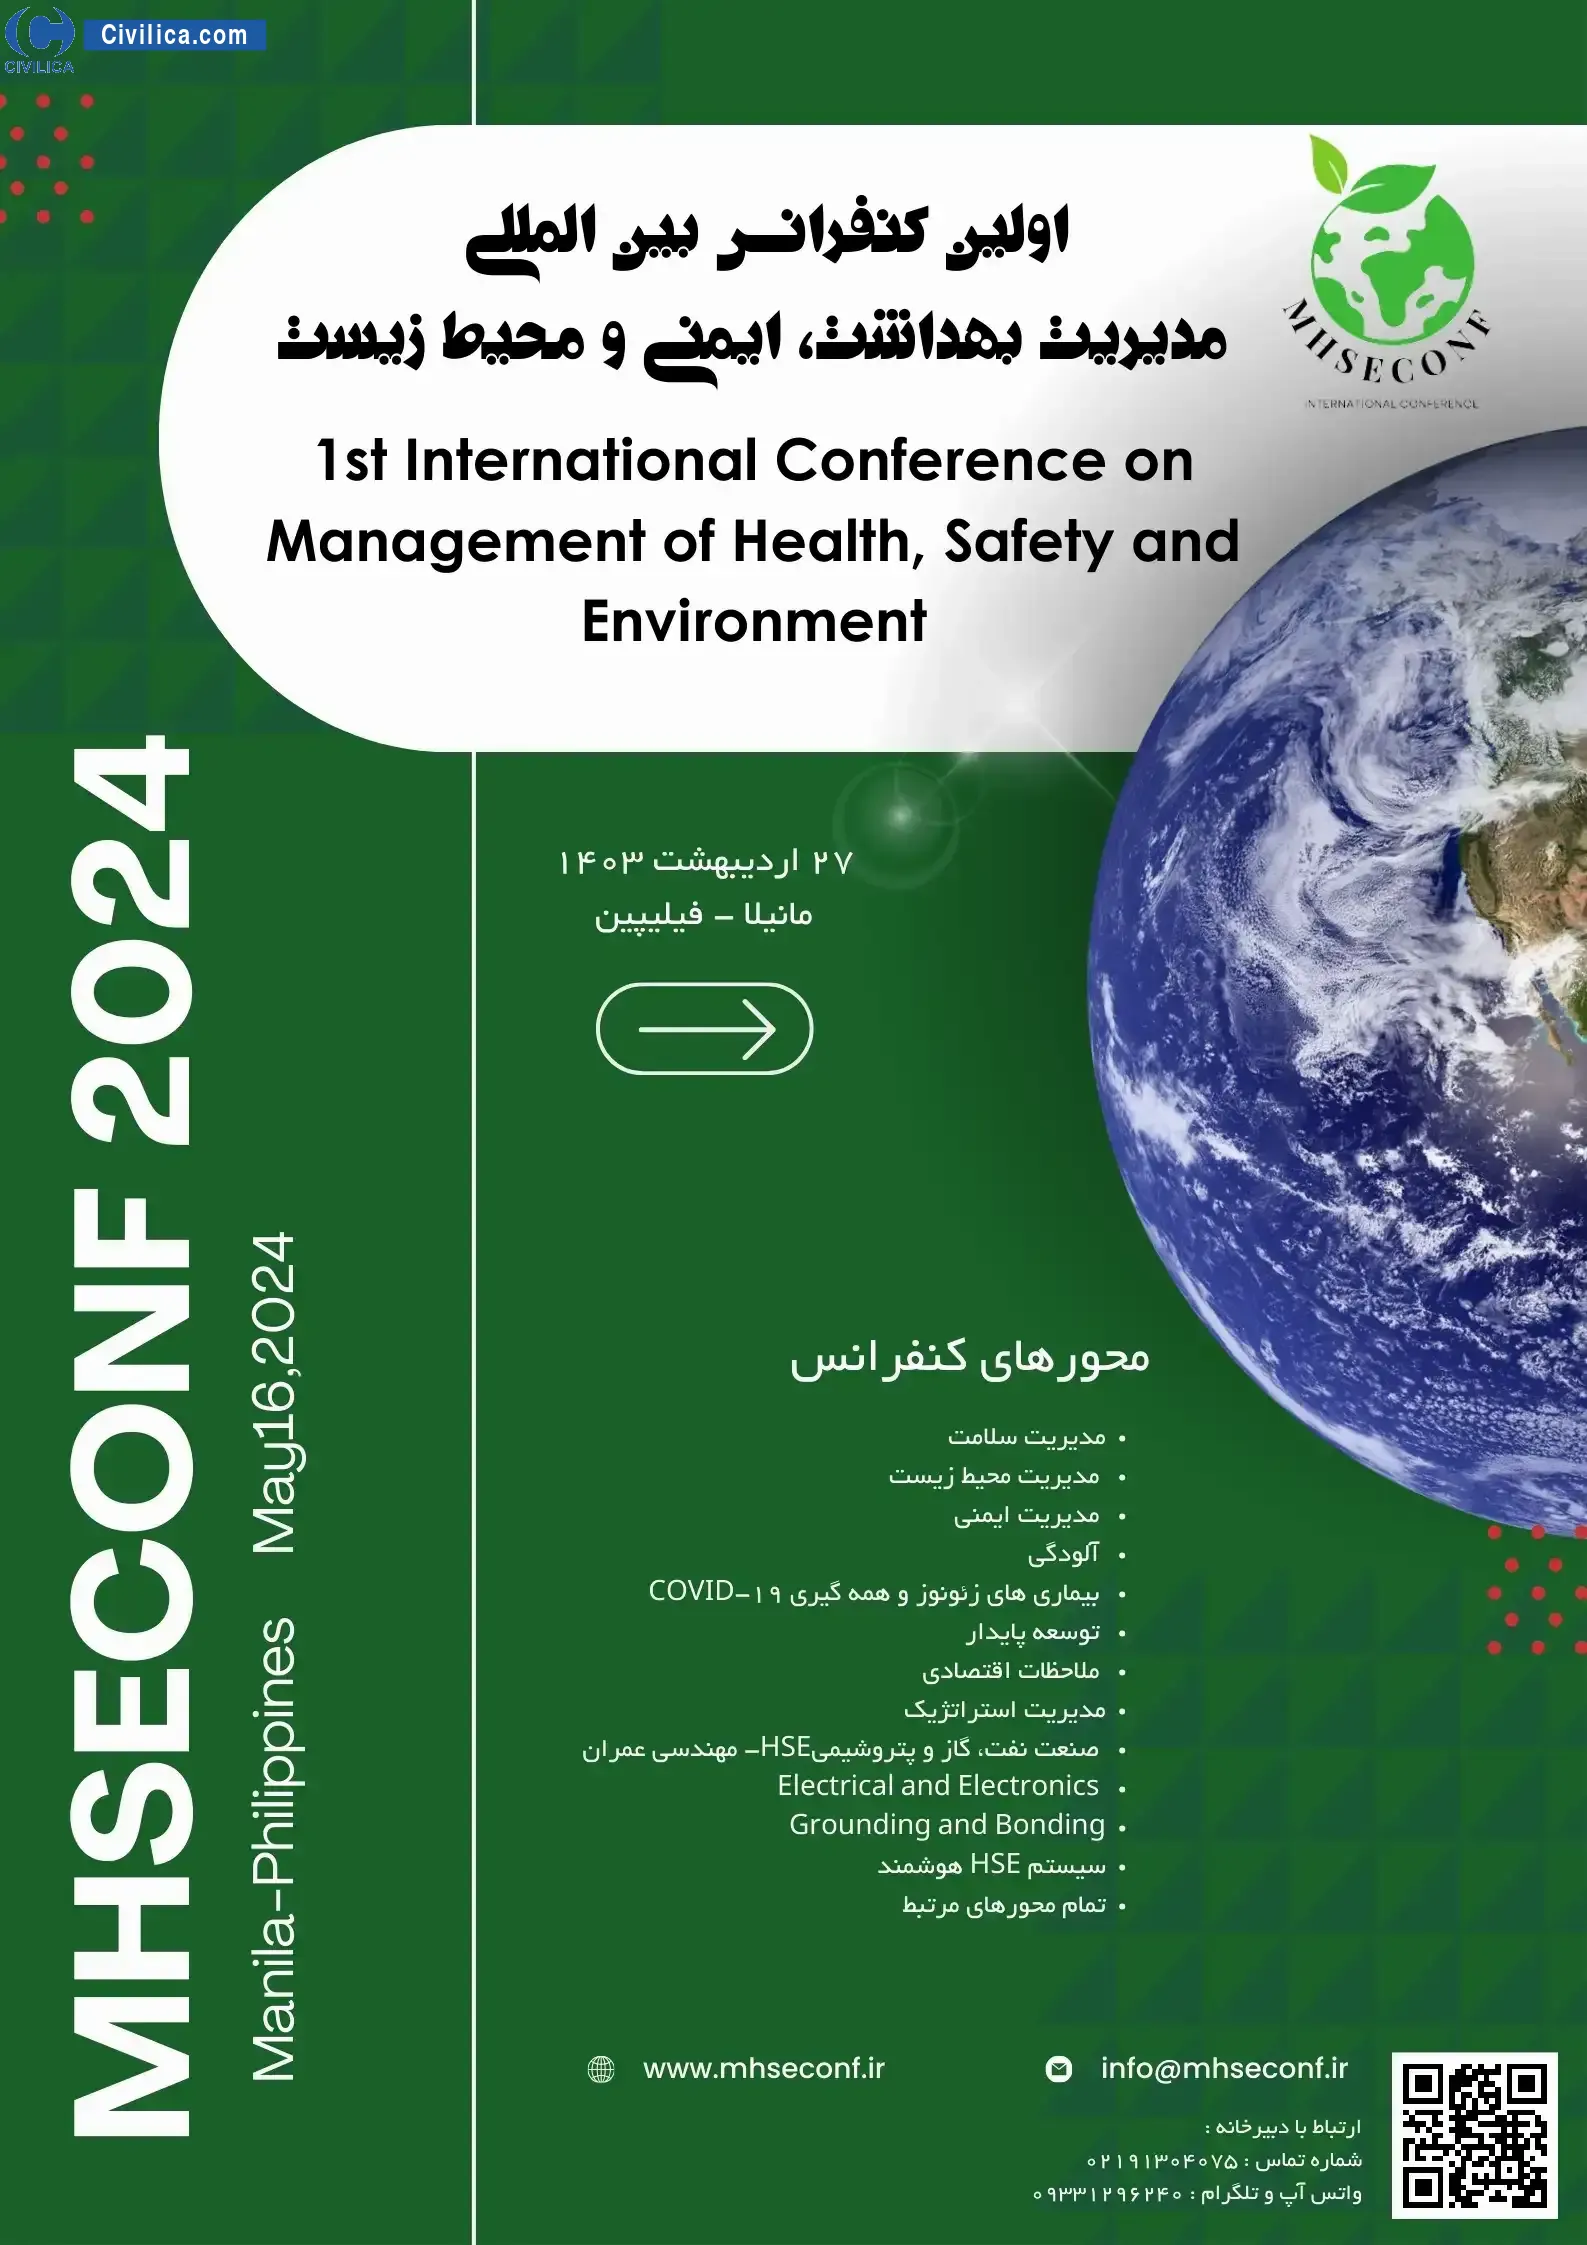 اولین کنفرانس بین المللی در مدیریت بهداشت، ایمنی و محیط زیست